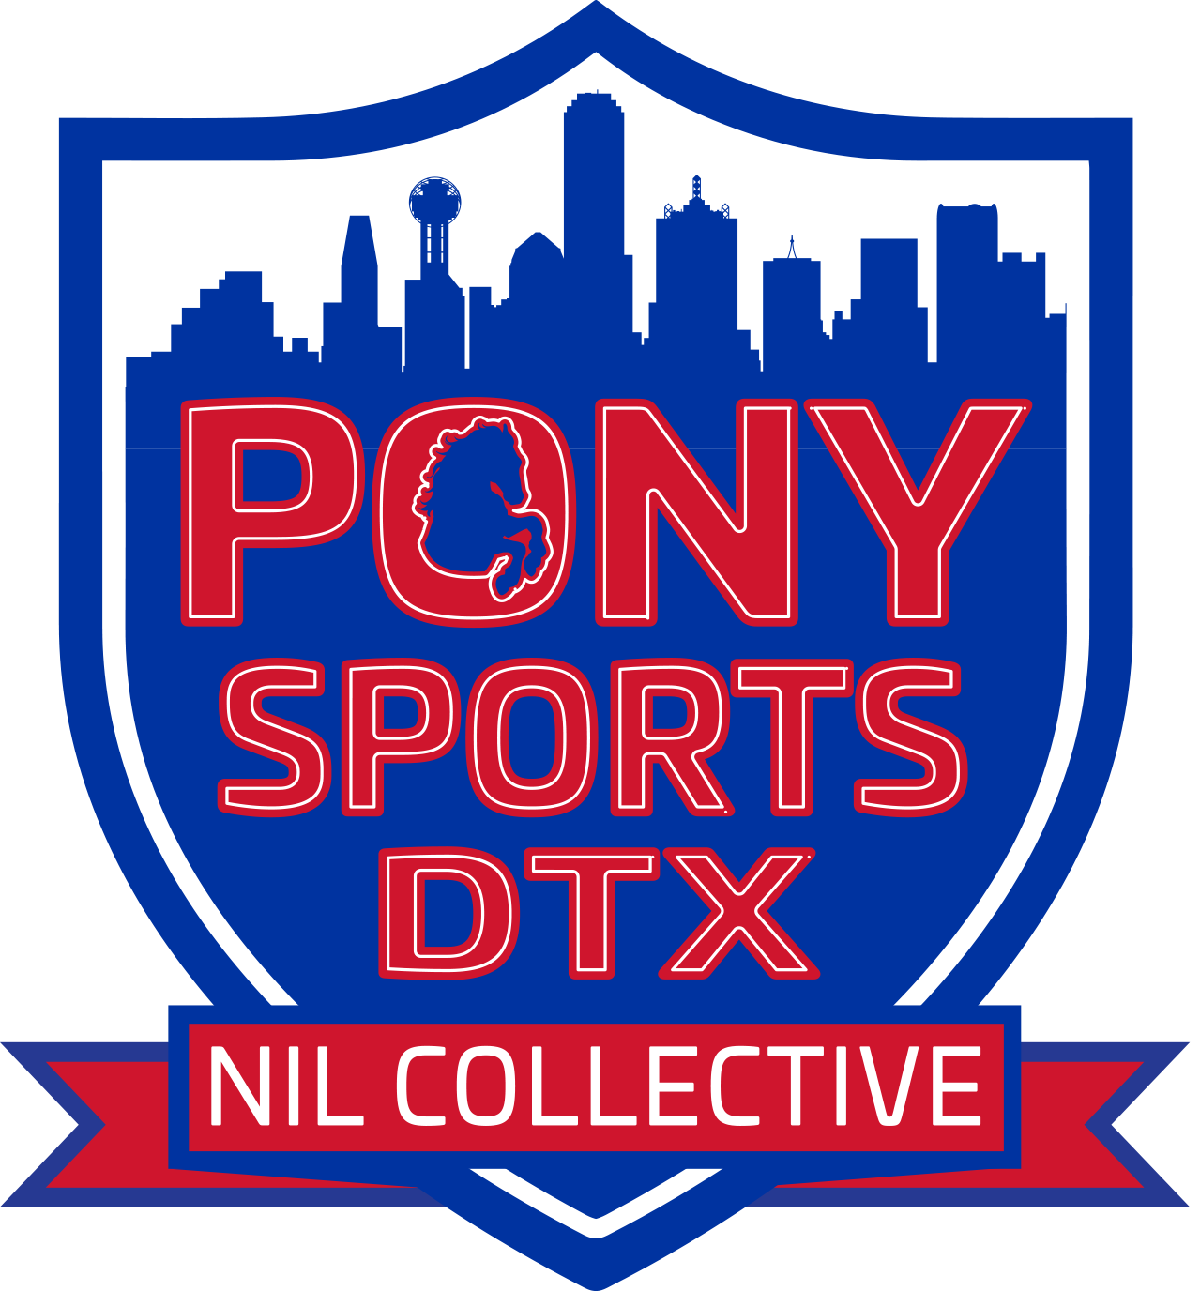 Pony Sports DTX